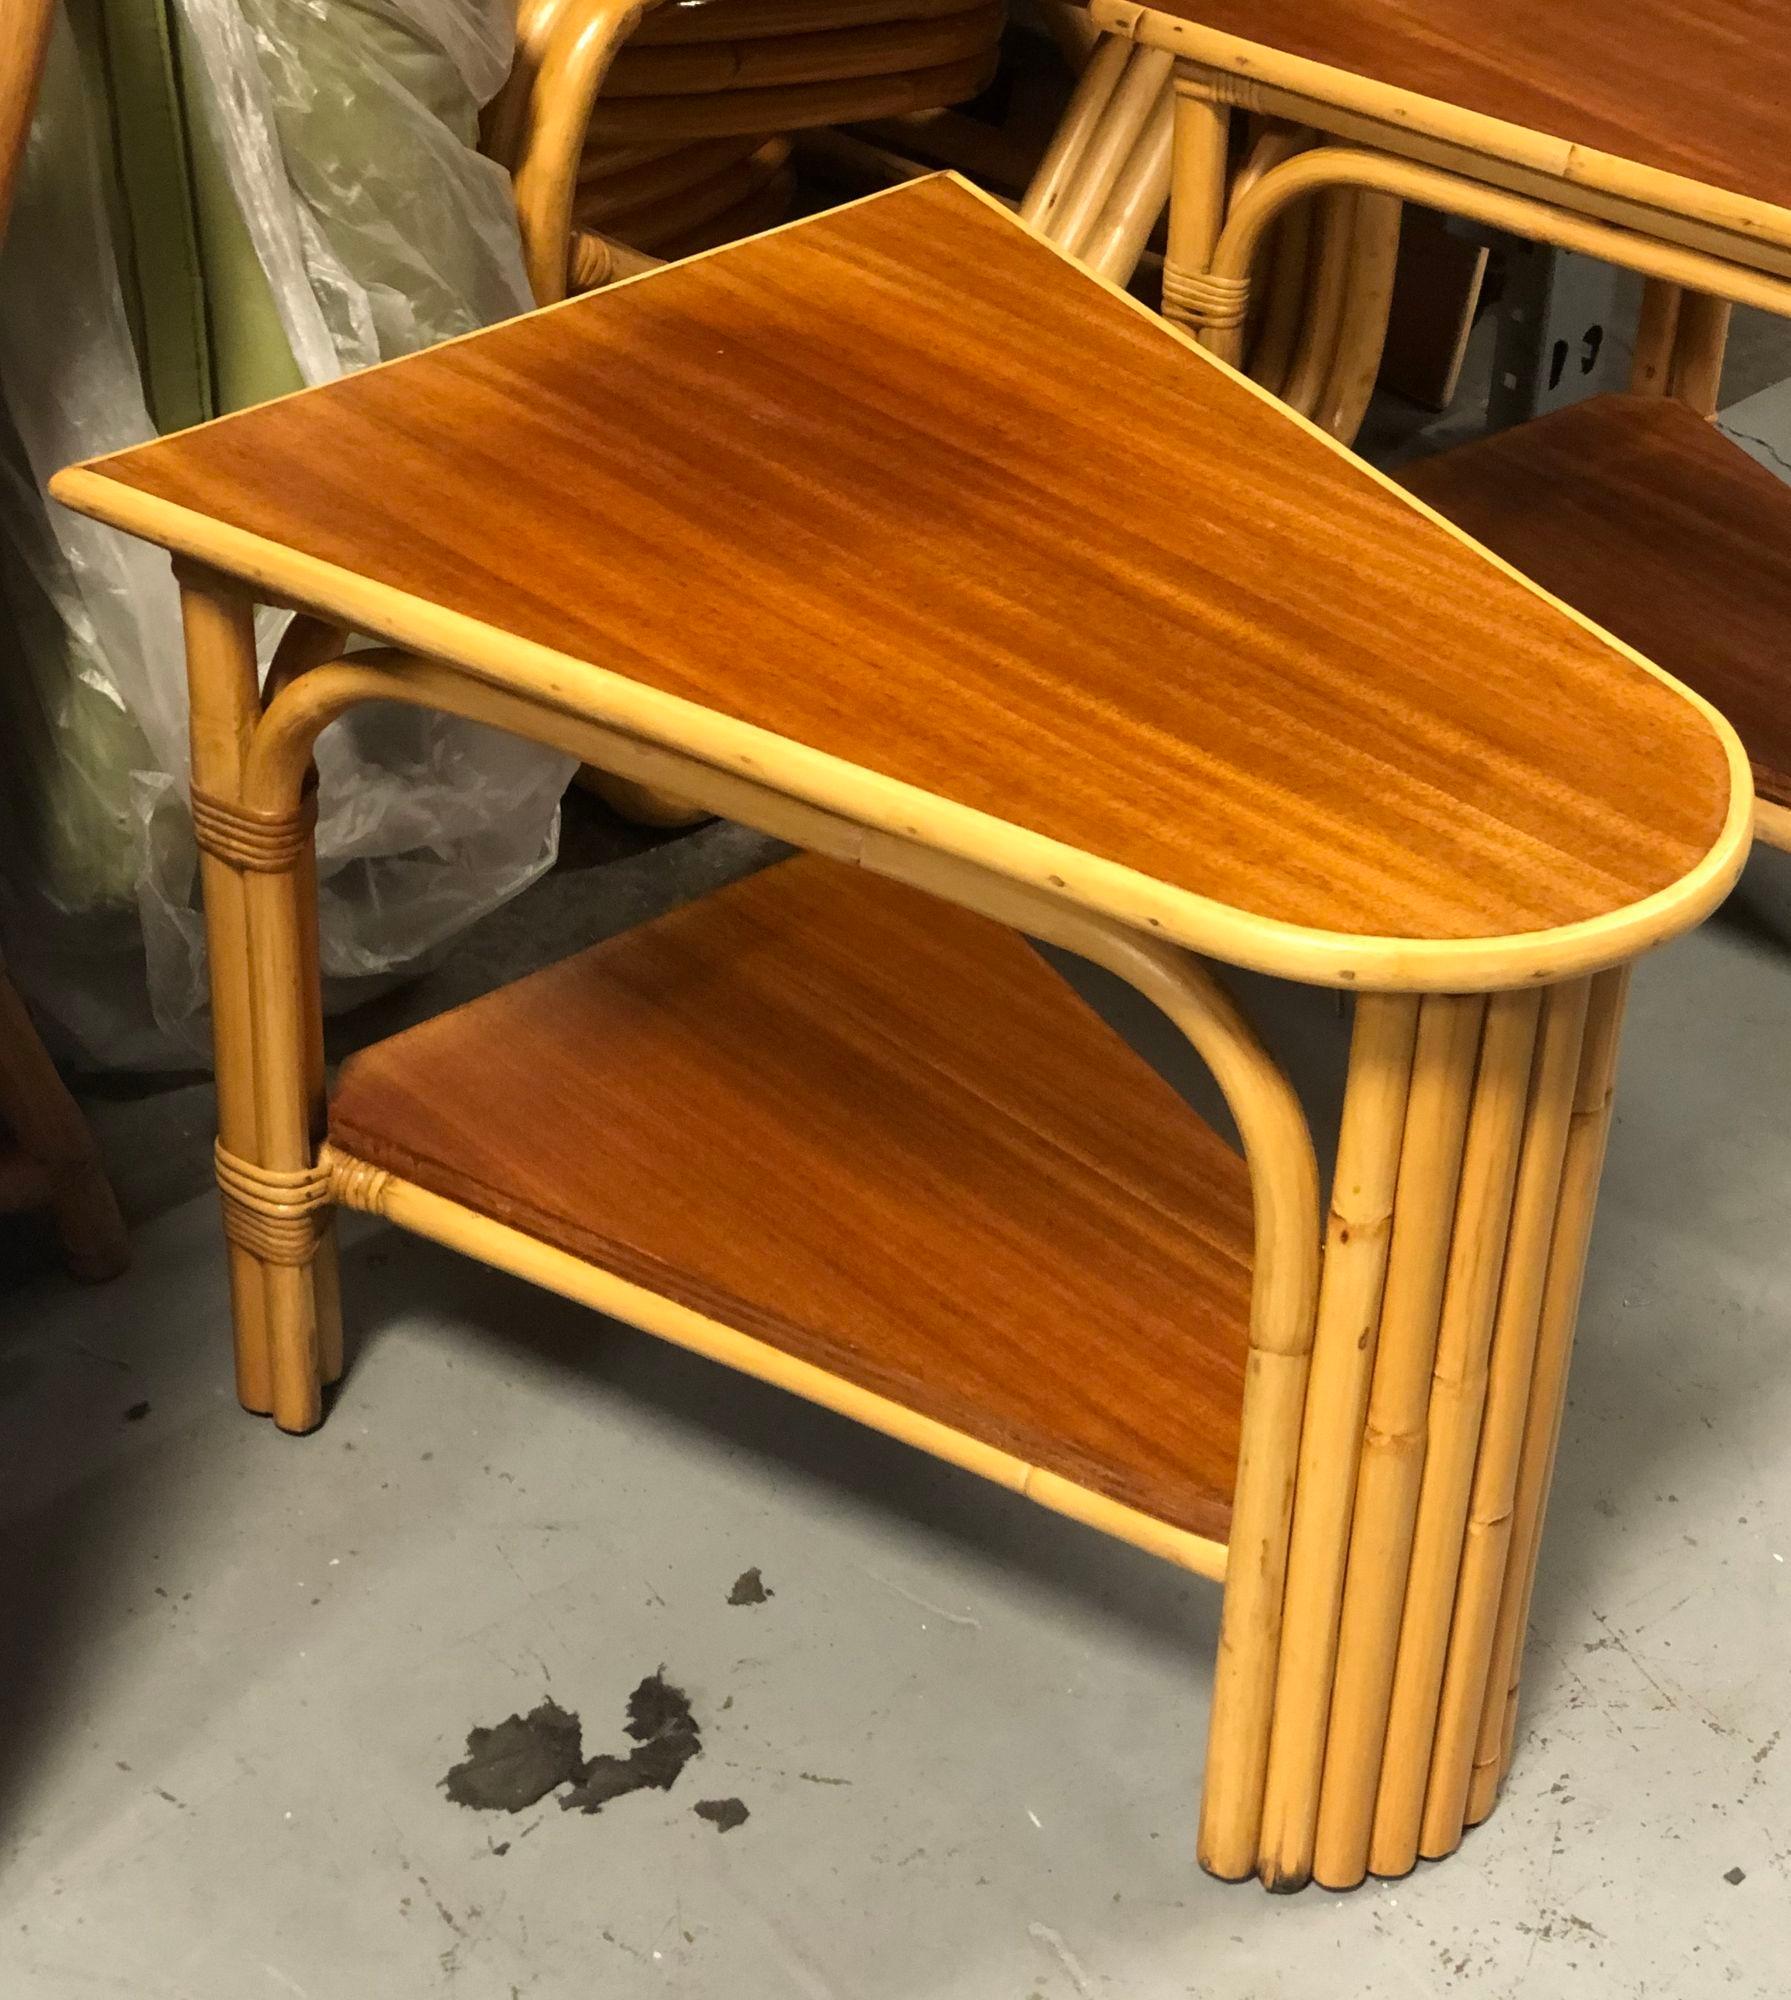 Der zweigeschossige Rattan-Eckbeistelltisch mit Mahagoni-Tischplatte aus der Zeit um 1940 verkörpert das frühe moderne Rattan-Design. Die Mischung der Materialien ergibt ein funktionelles und zugleich elegantes Stück, das Vintage-Charme und